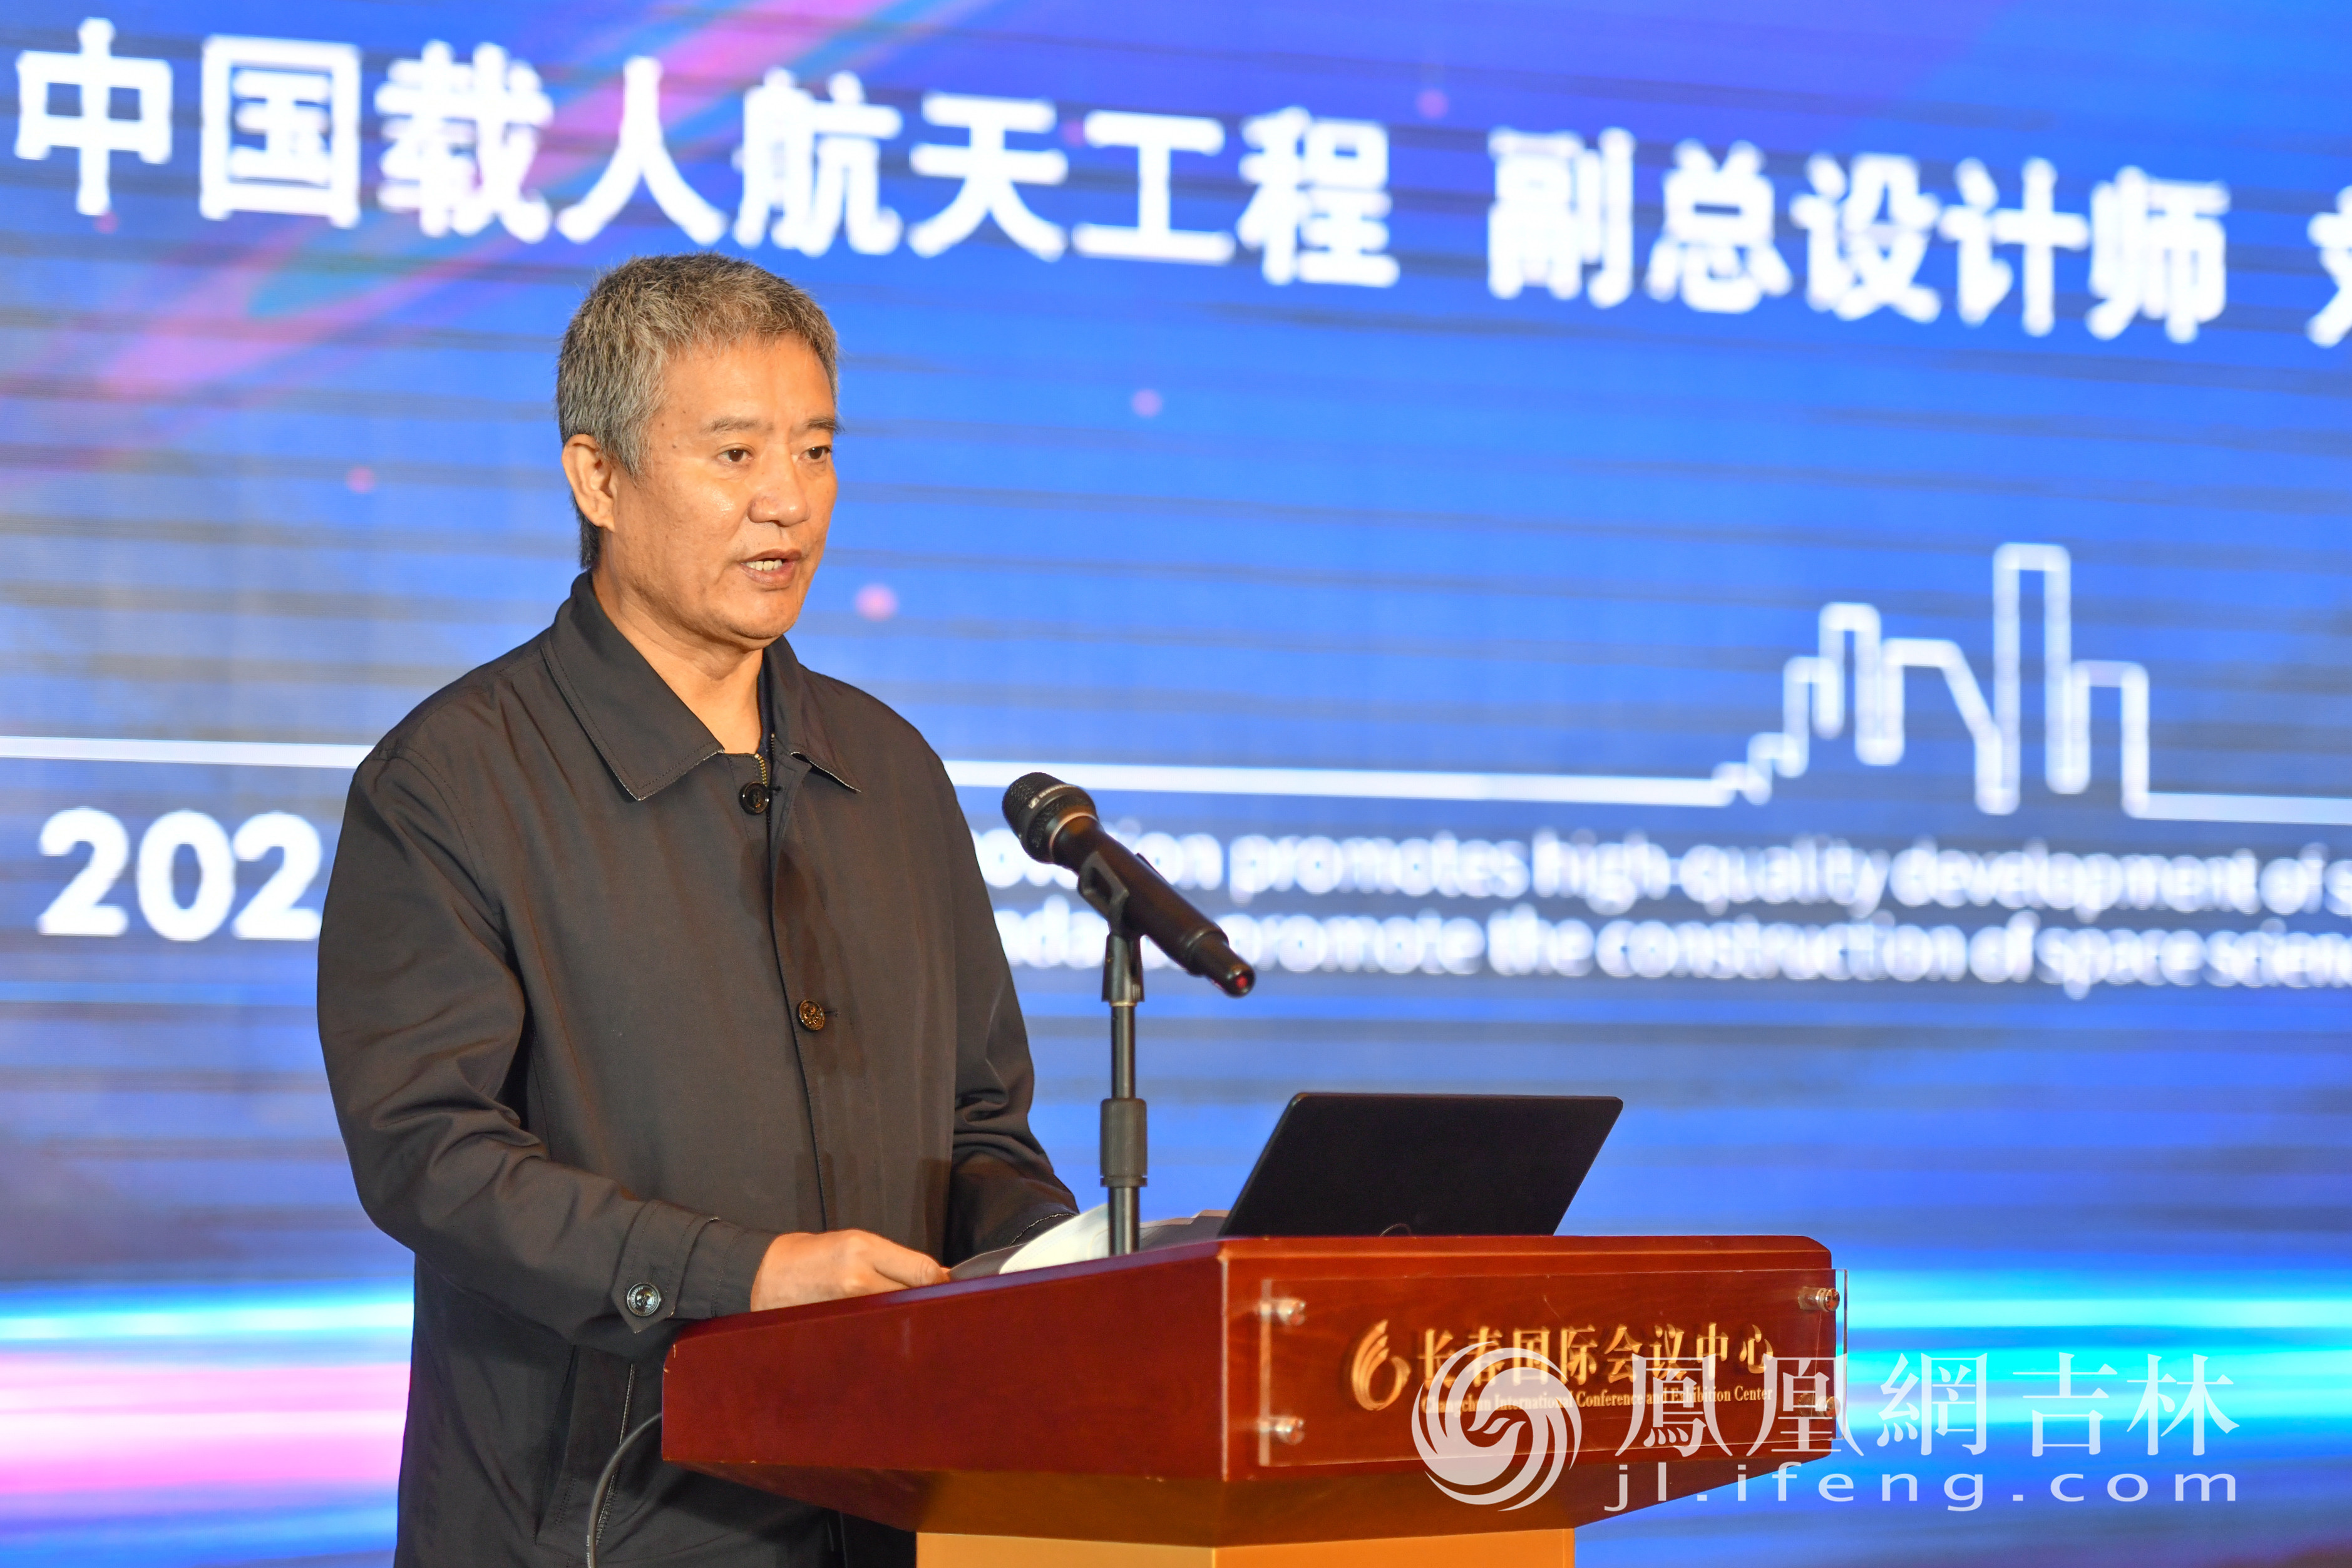 中国载人航天工程副总设计师刘晋在会上致辞。梁琪佳摄